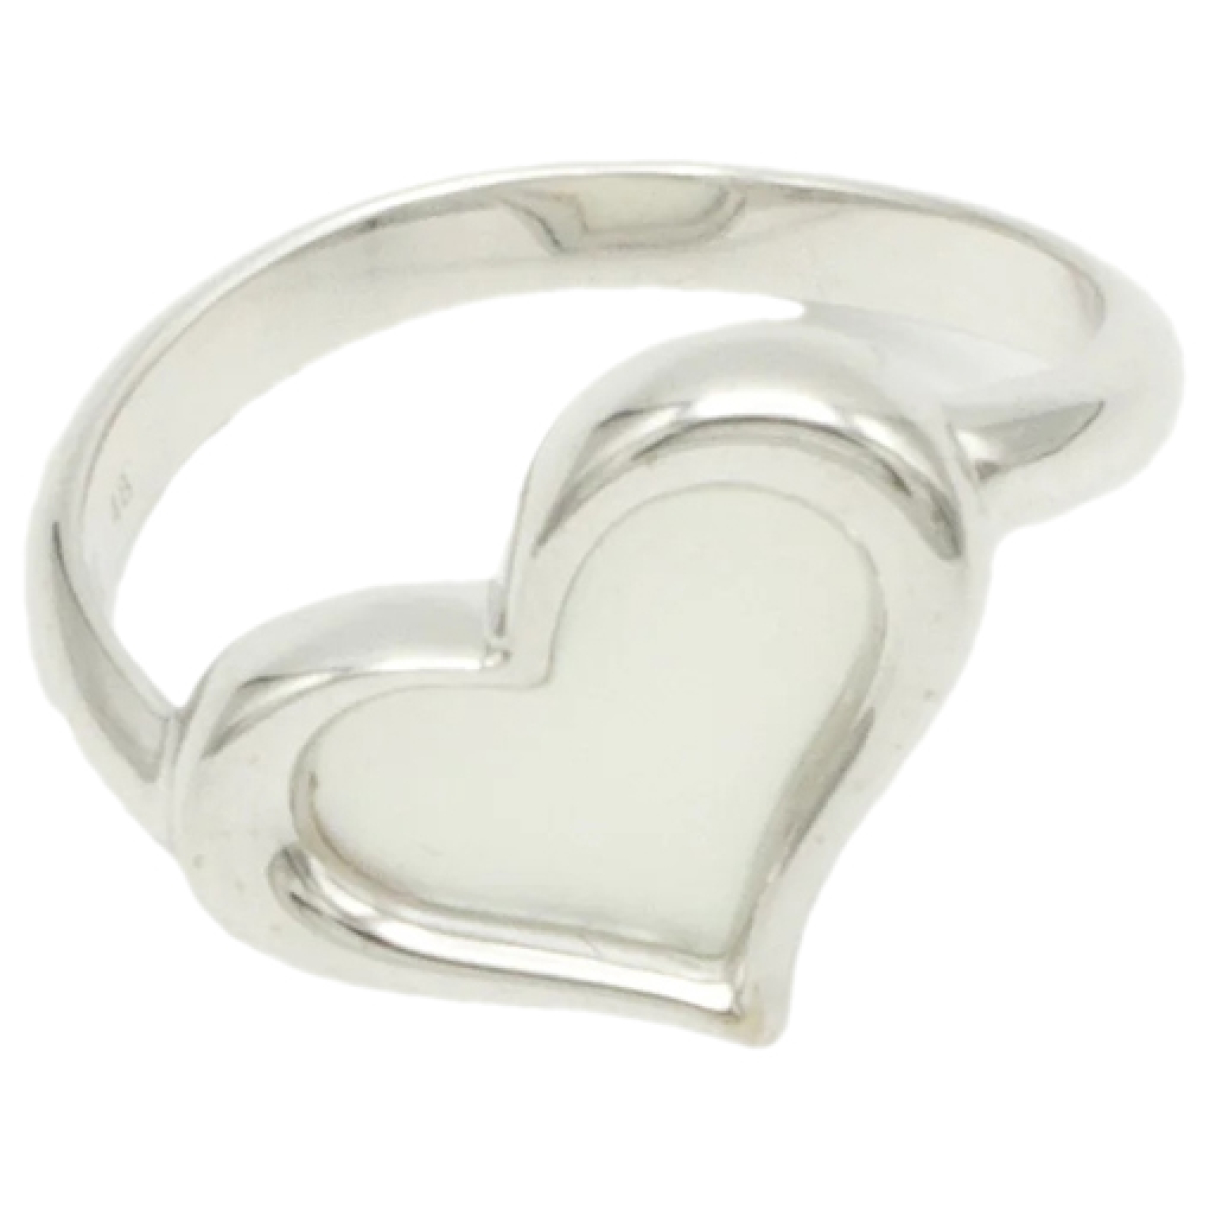 image of Piaget Coeur Piaget white gold ring